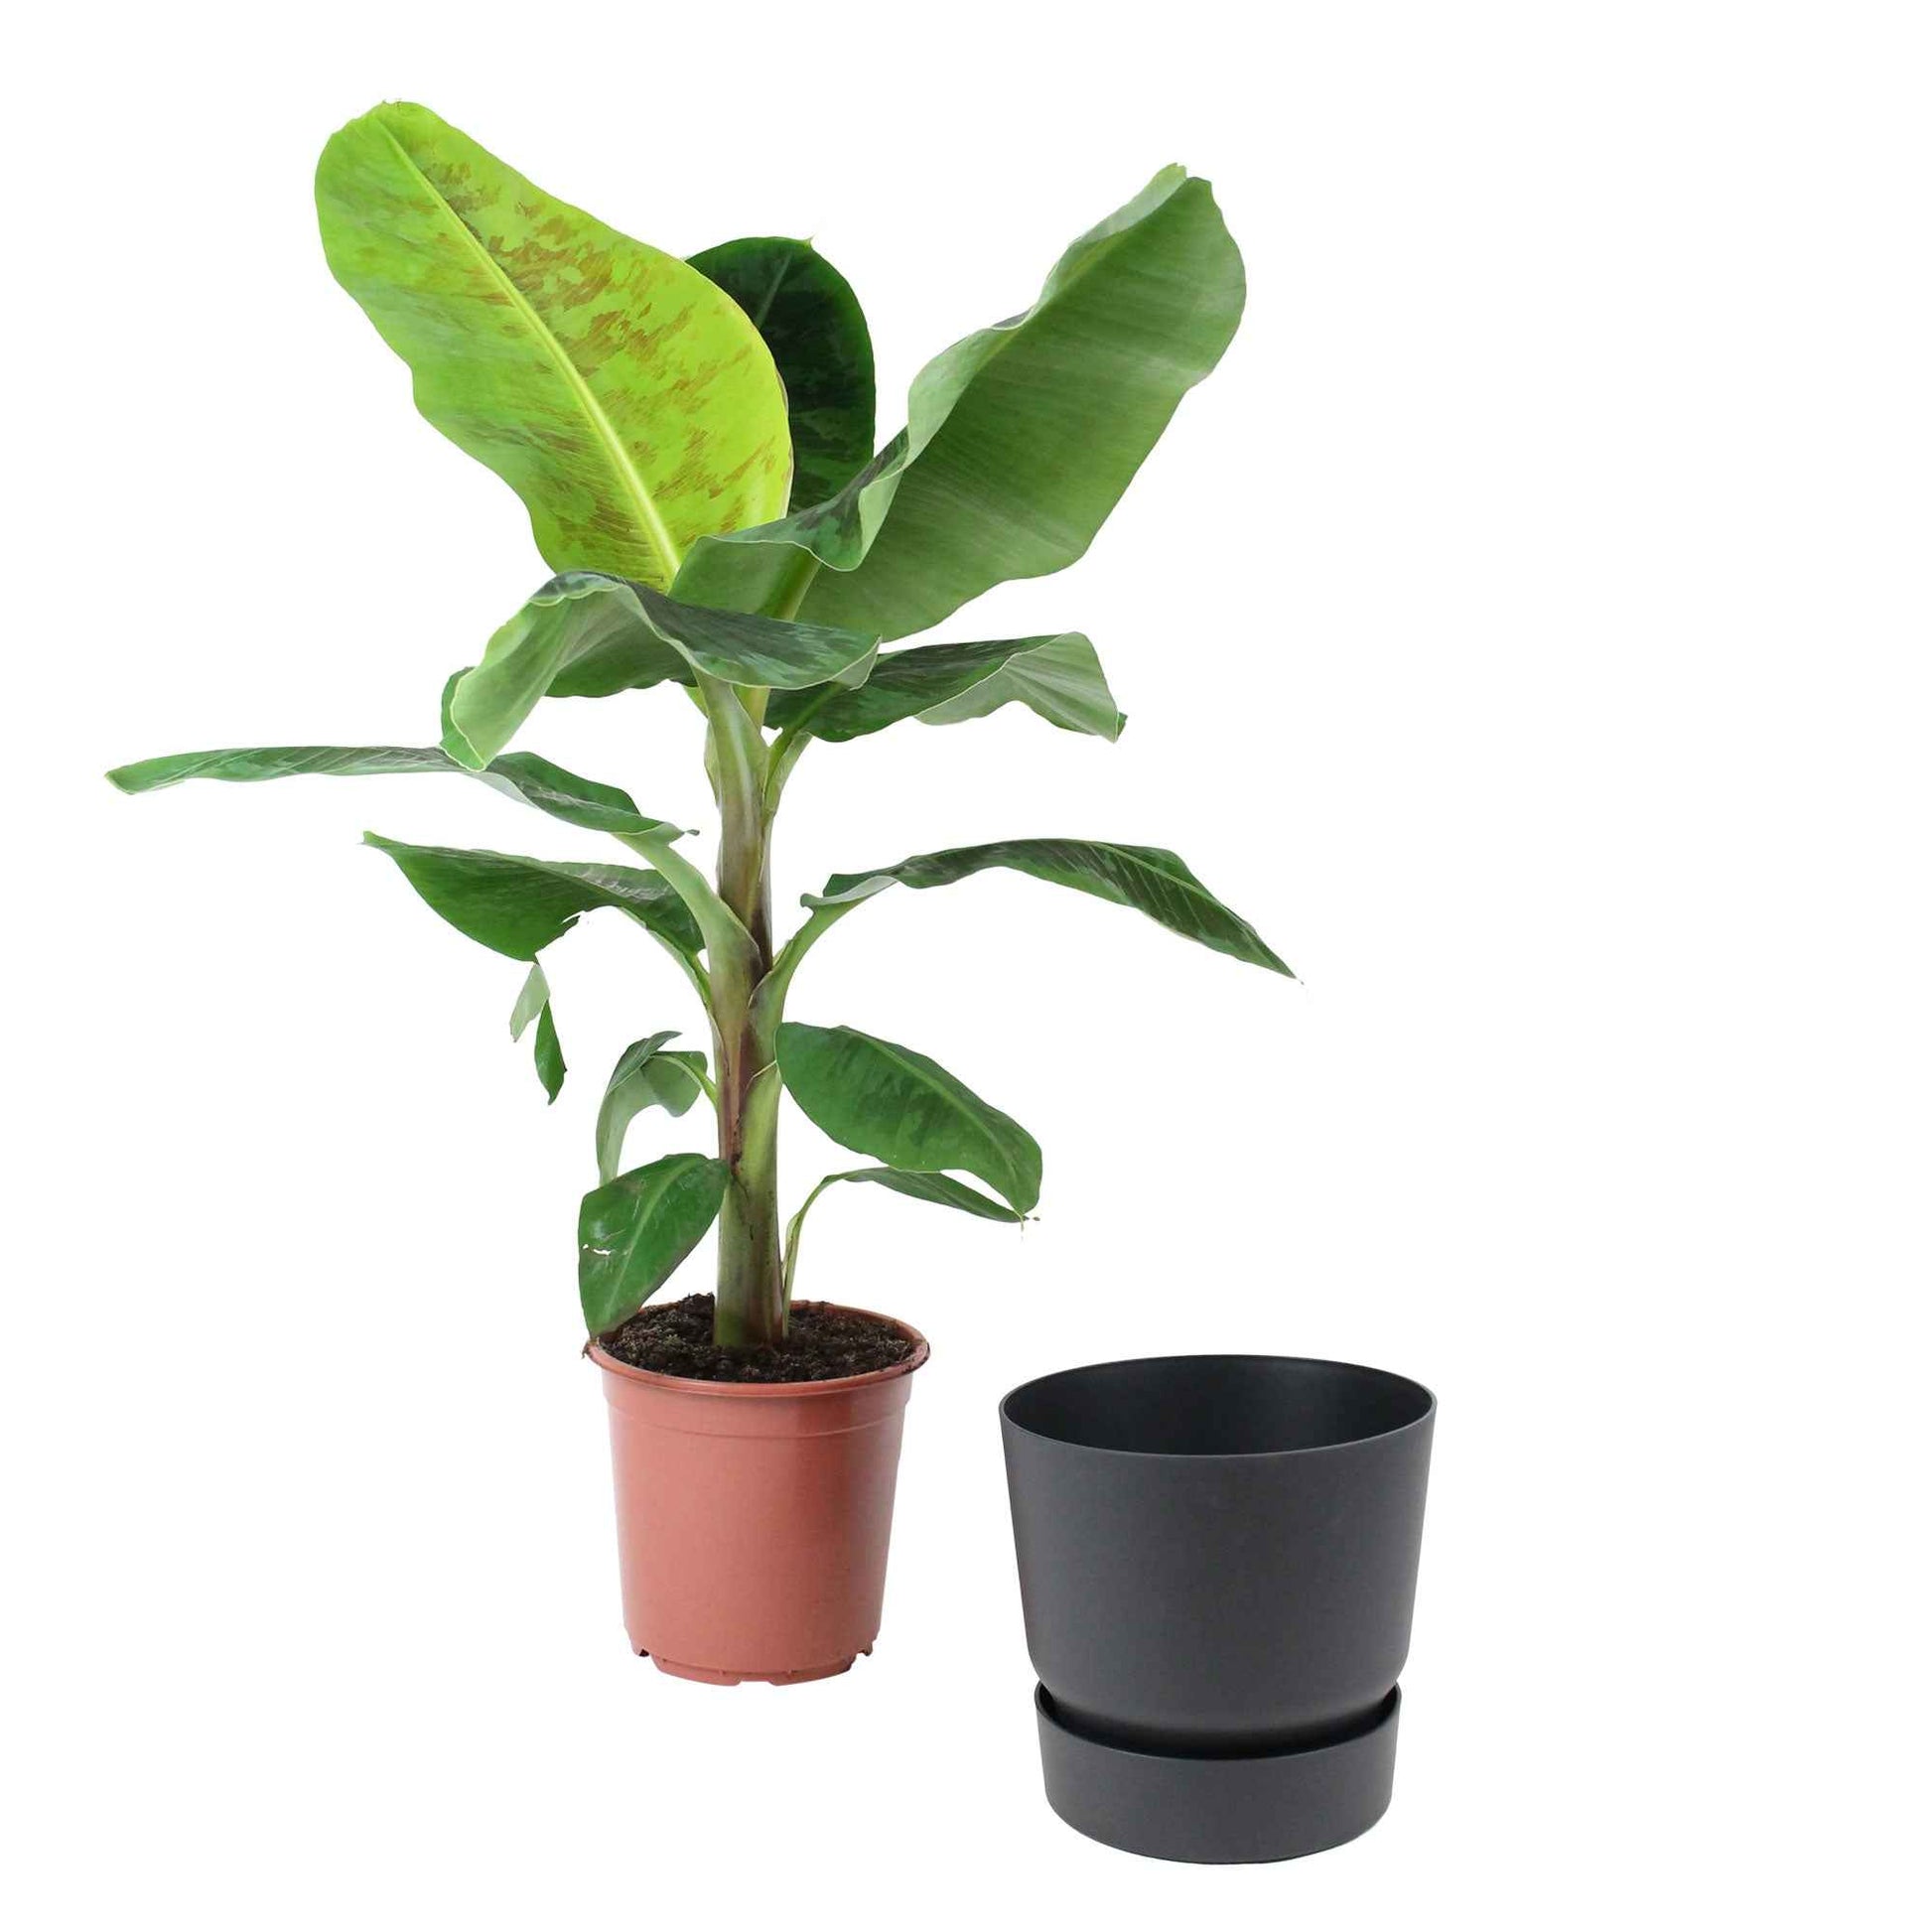 Bananier Musa 'Cavendish' avec pot décoratif noir - Plantes d'intérieur : les tendances actuelles